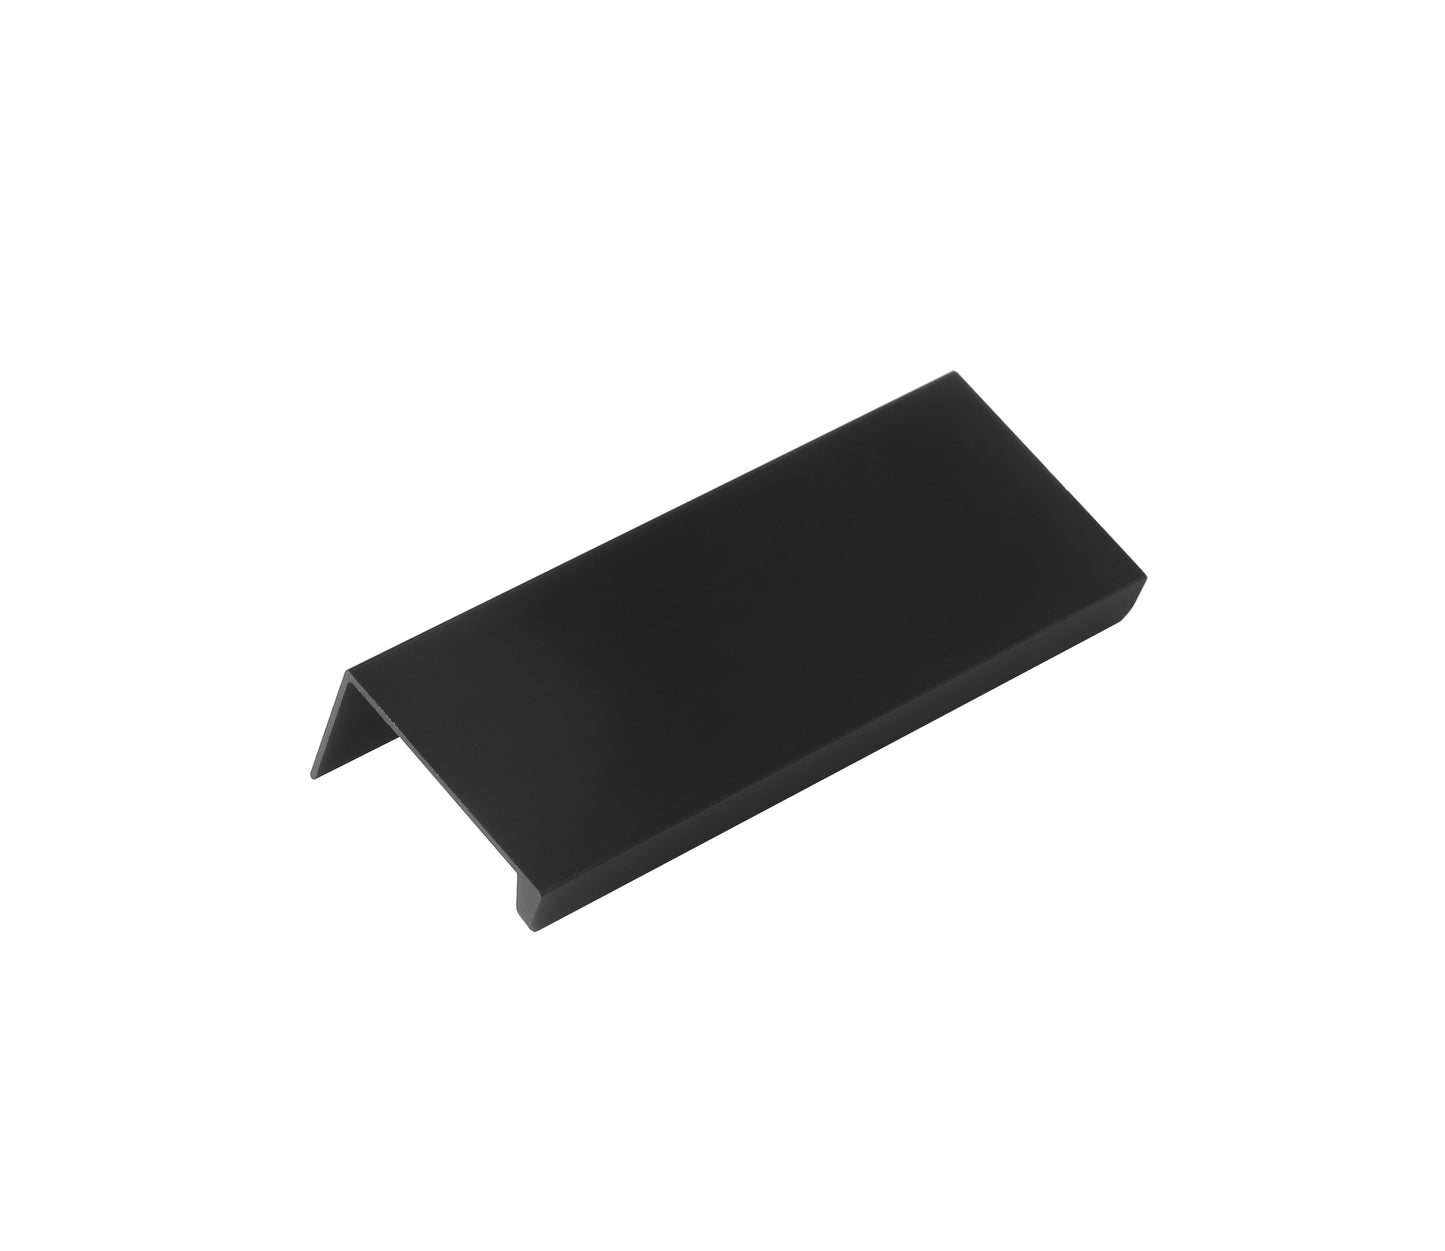 Center-to-Center Matte Black Finger Edge Tap Cabinet Pull (10-Pack)